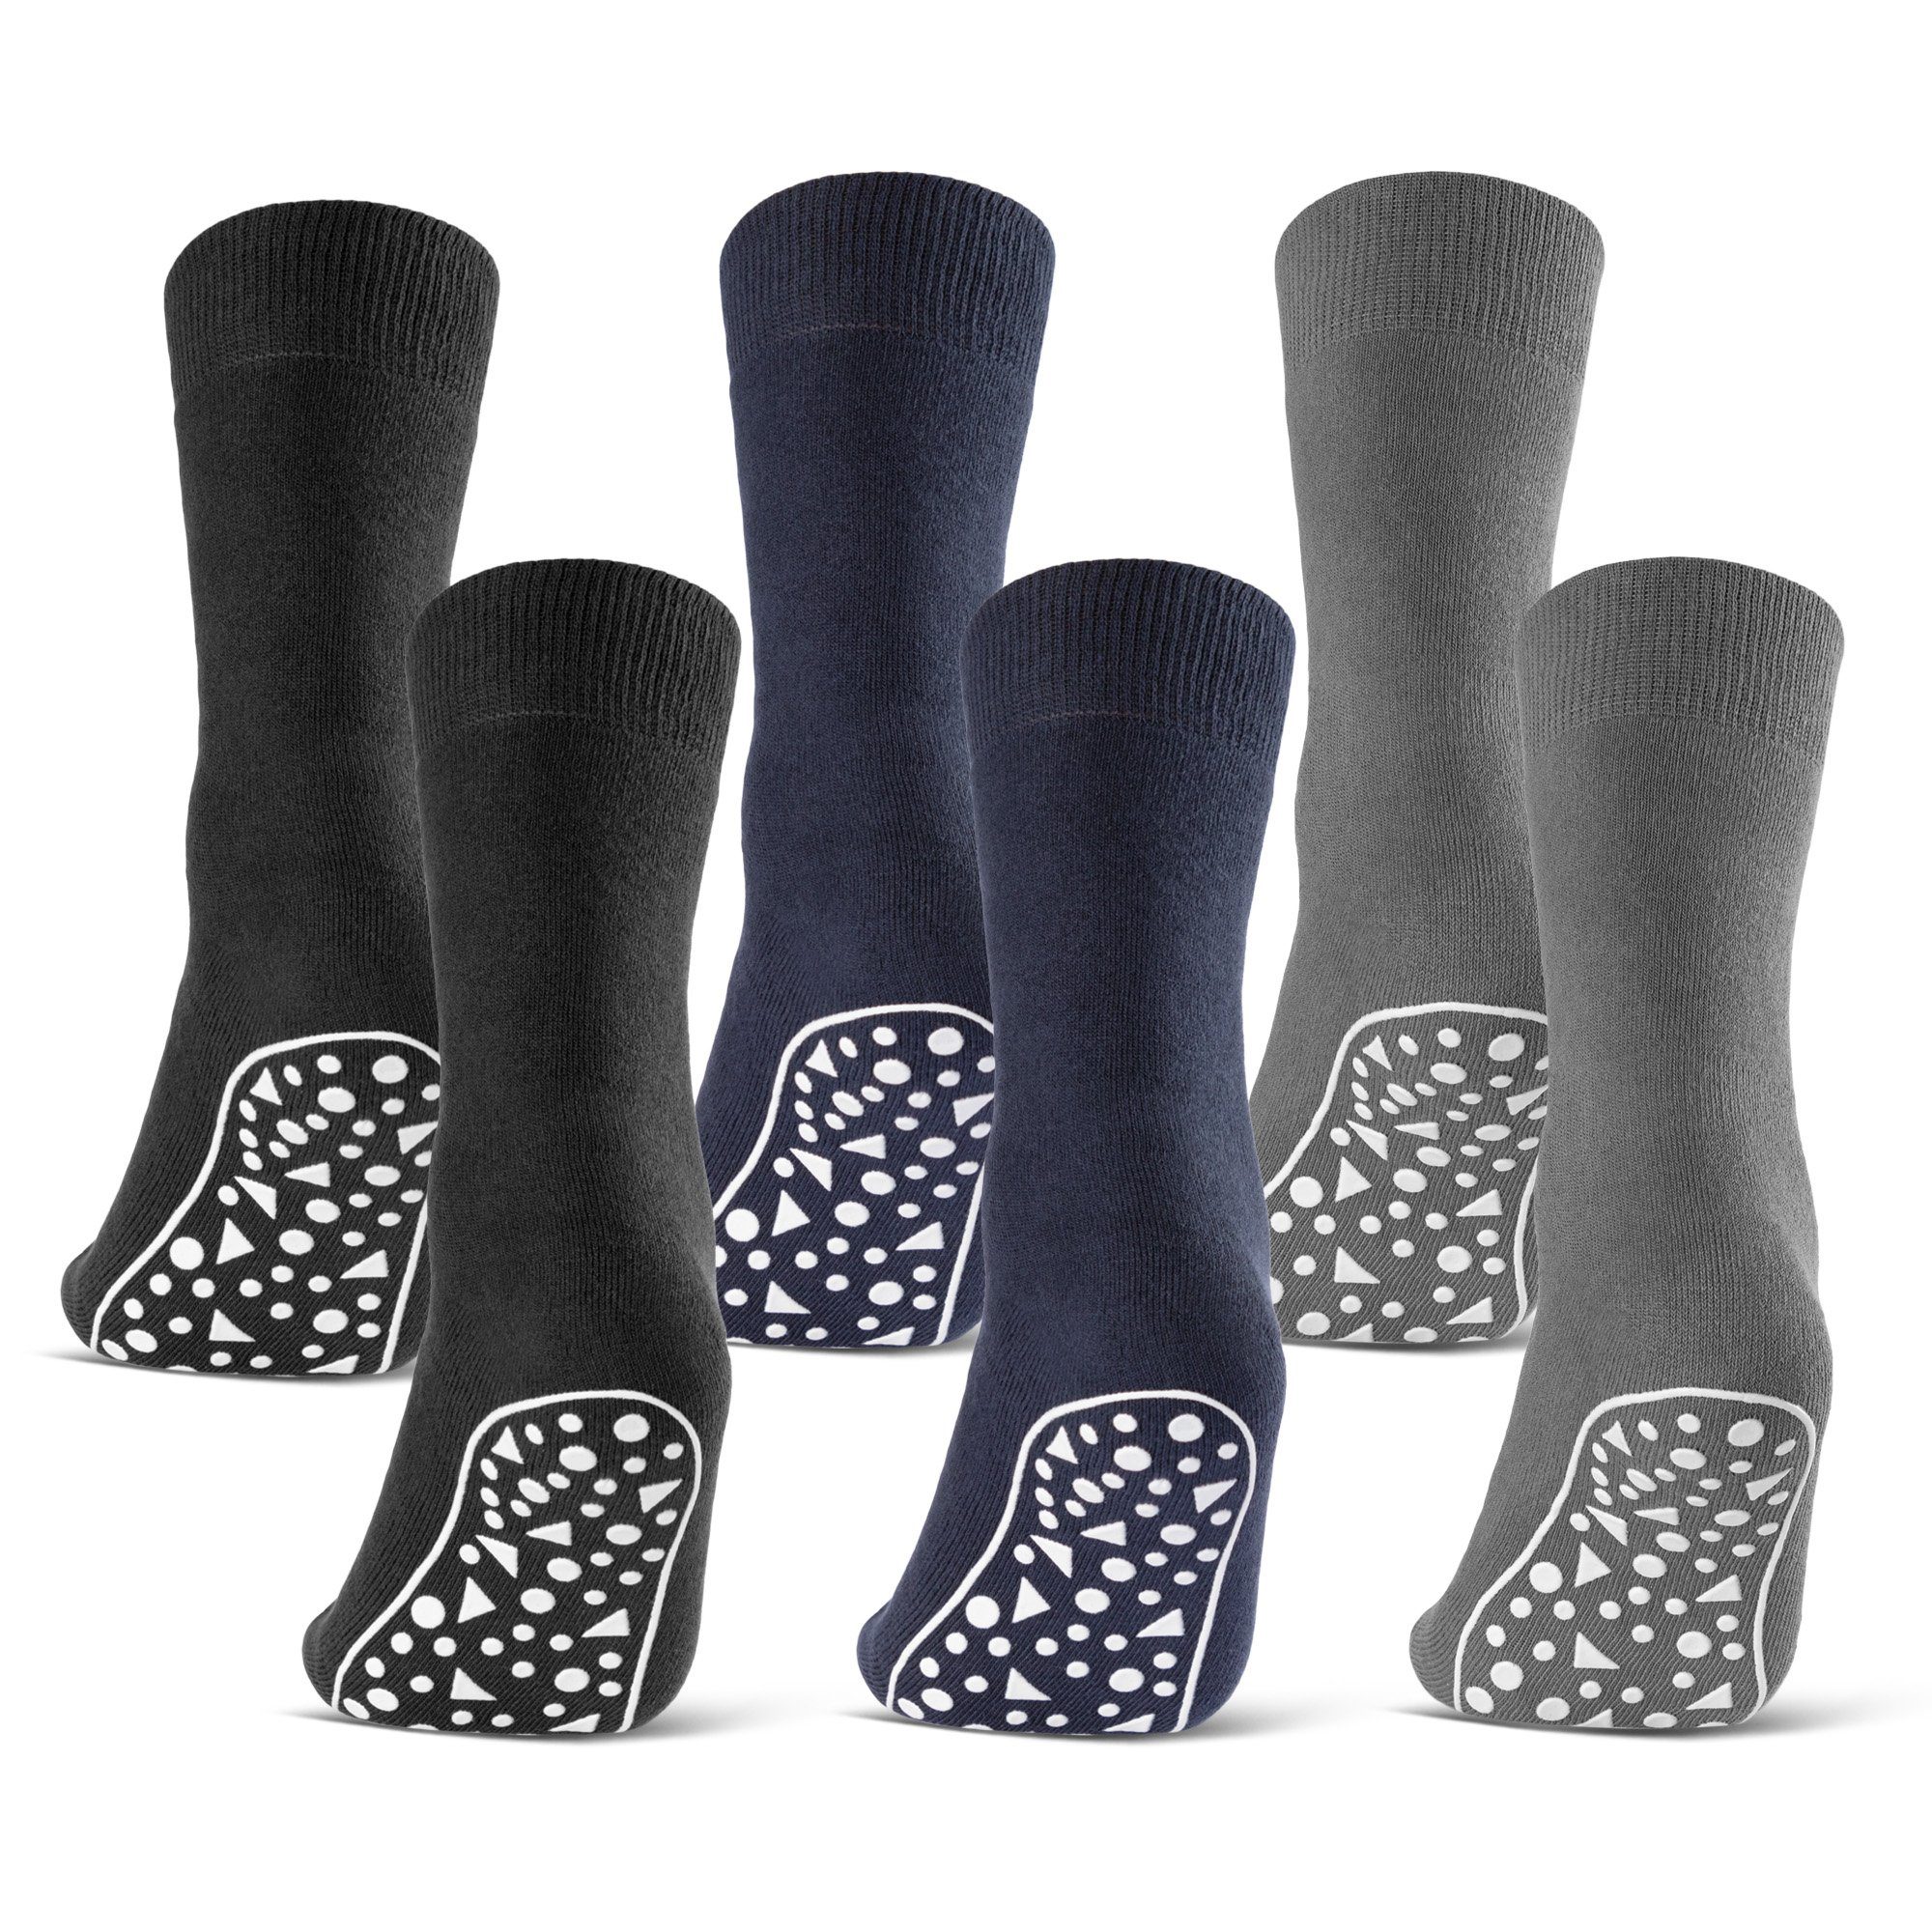 sockenkauf24 ABS-Socken 2, 4, 6 Paar Damen & Herren Anti Rutsch Socken Baumwolle (Schwarz, Blau, Grau, 6-Paar, 39-42) Stoppersocken Noppensocken - 21395 WP